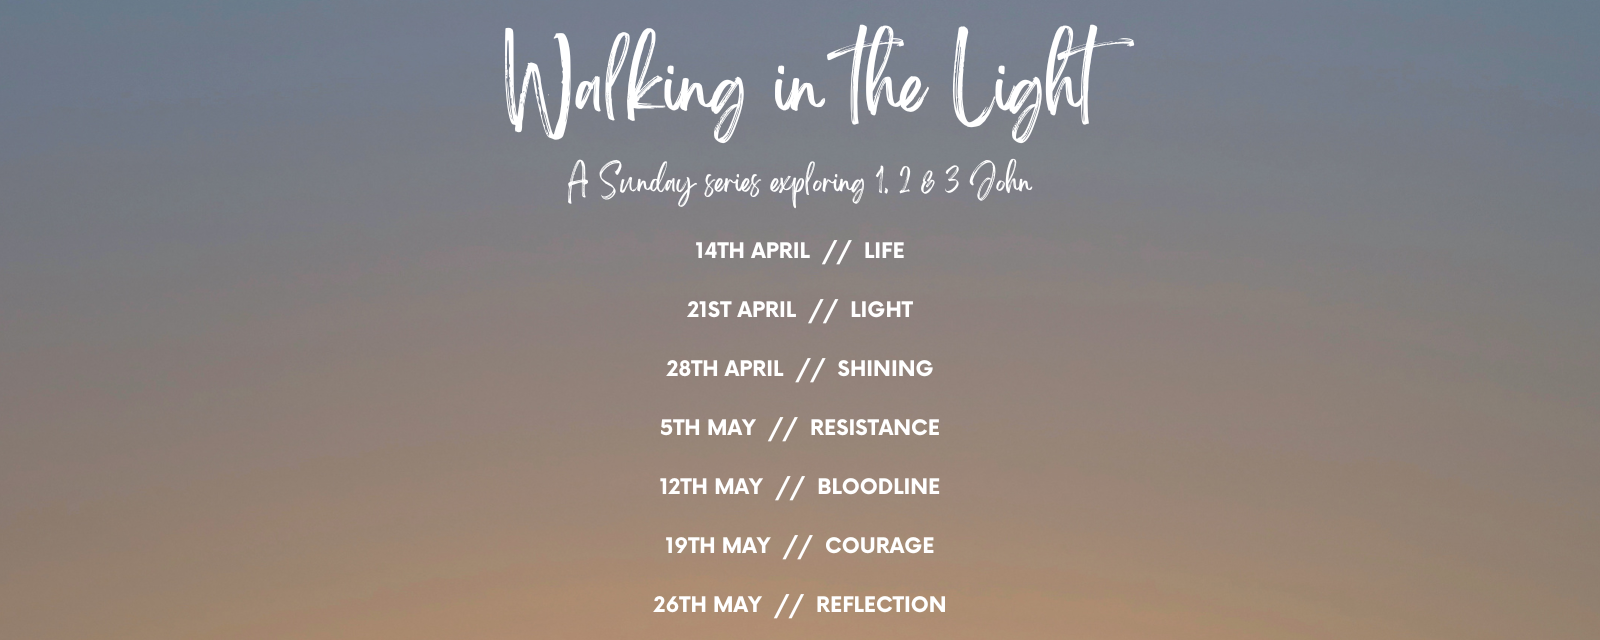 Walking In the Light (29 x 21 